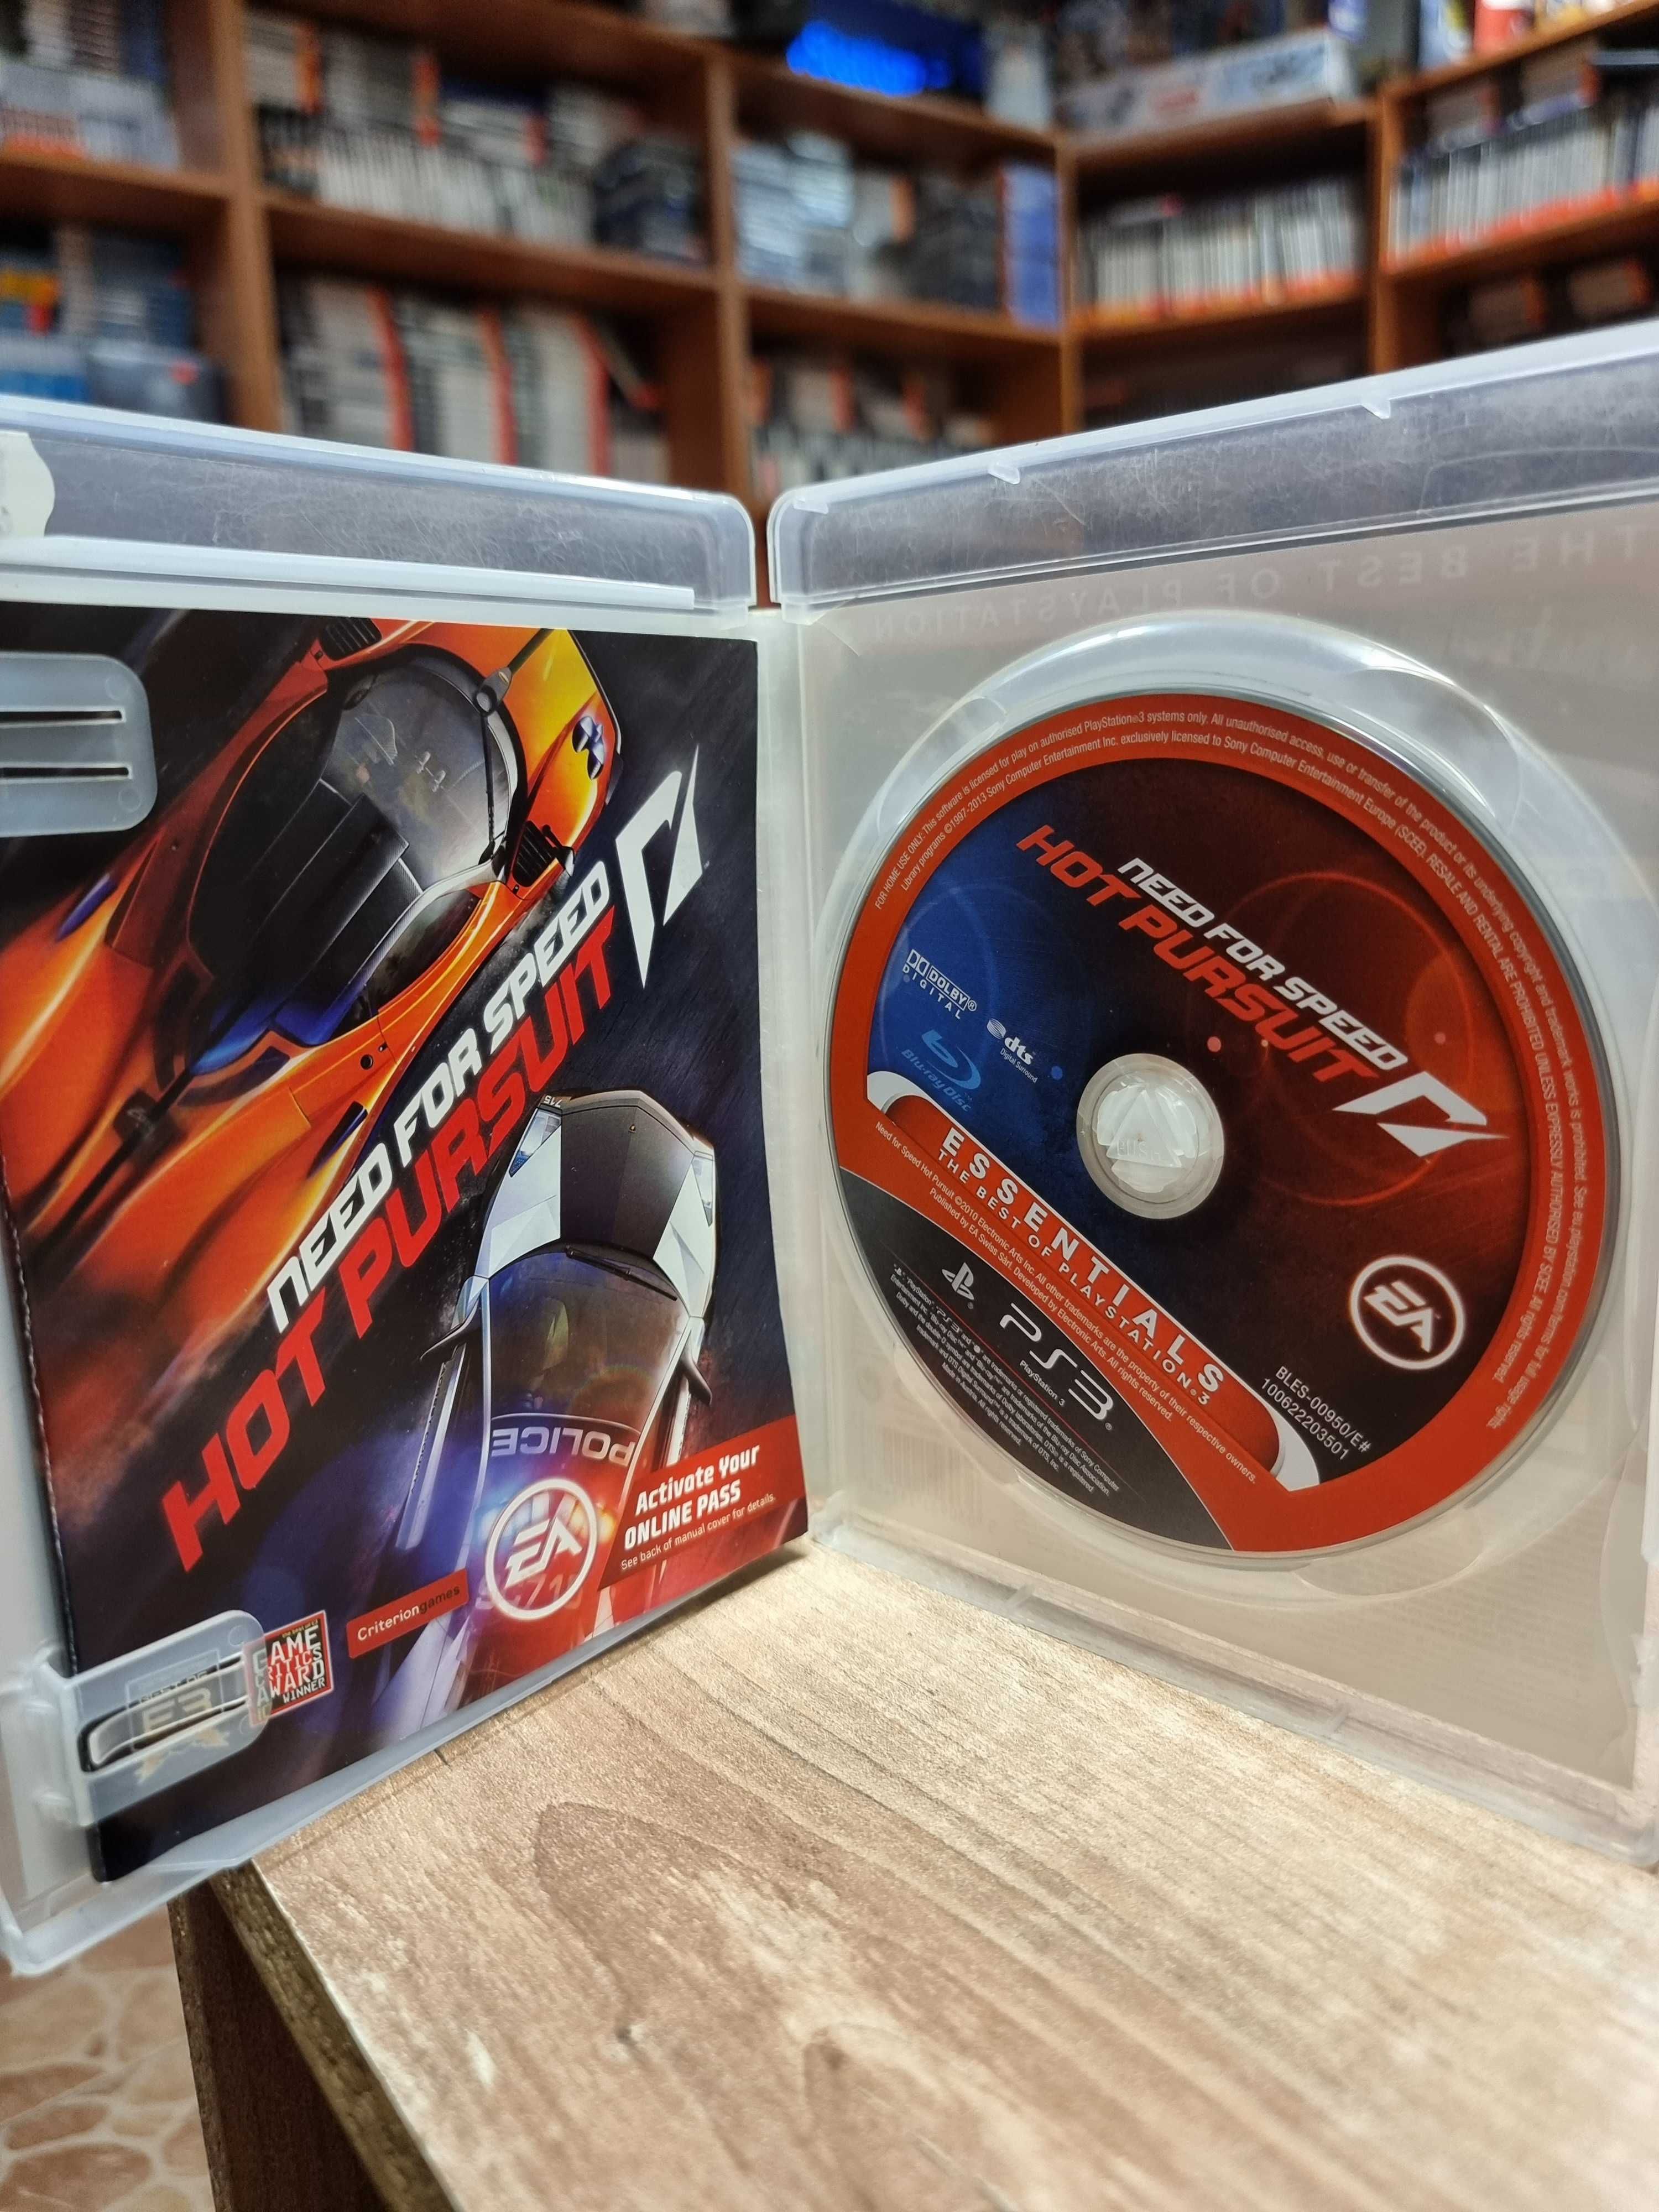 Need For Speed: Hot Pursuit PS3 PL, Sklep Wysyłka Wymiana